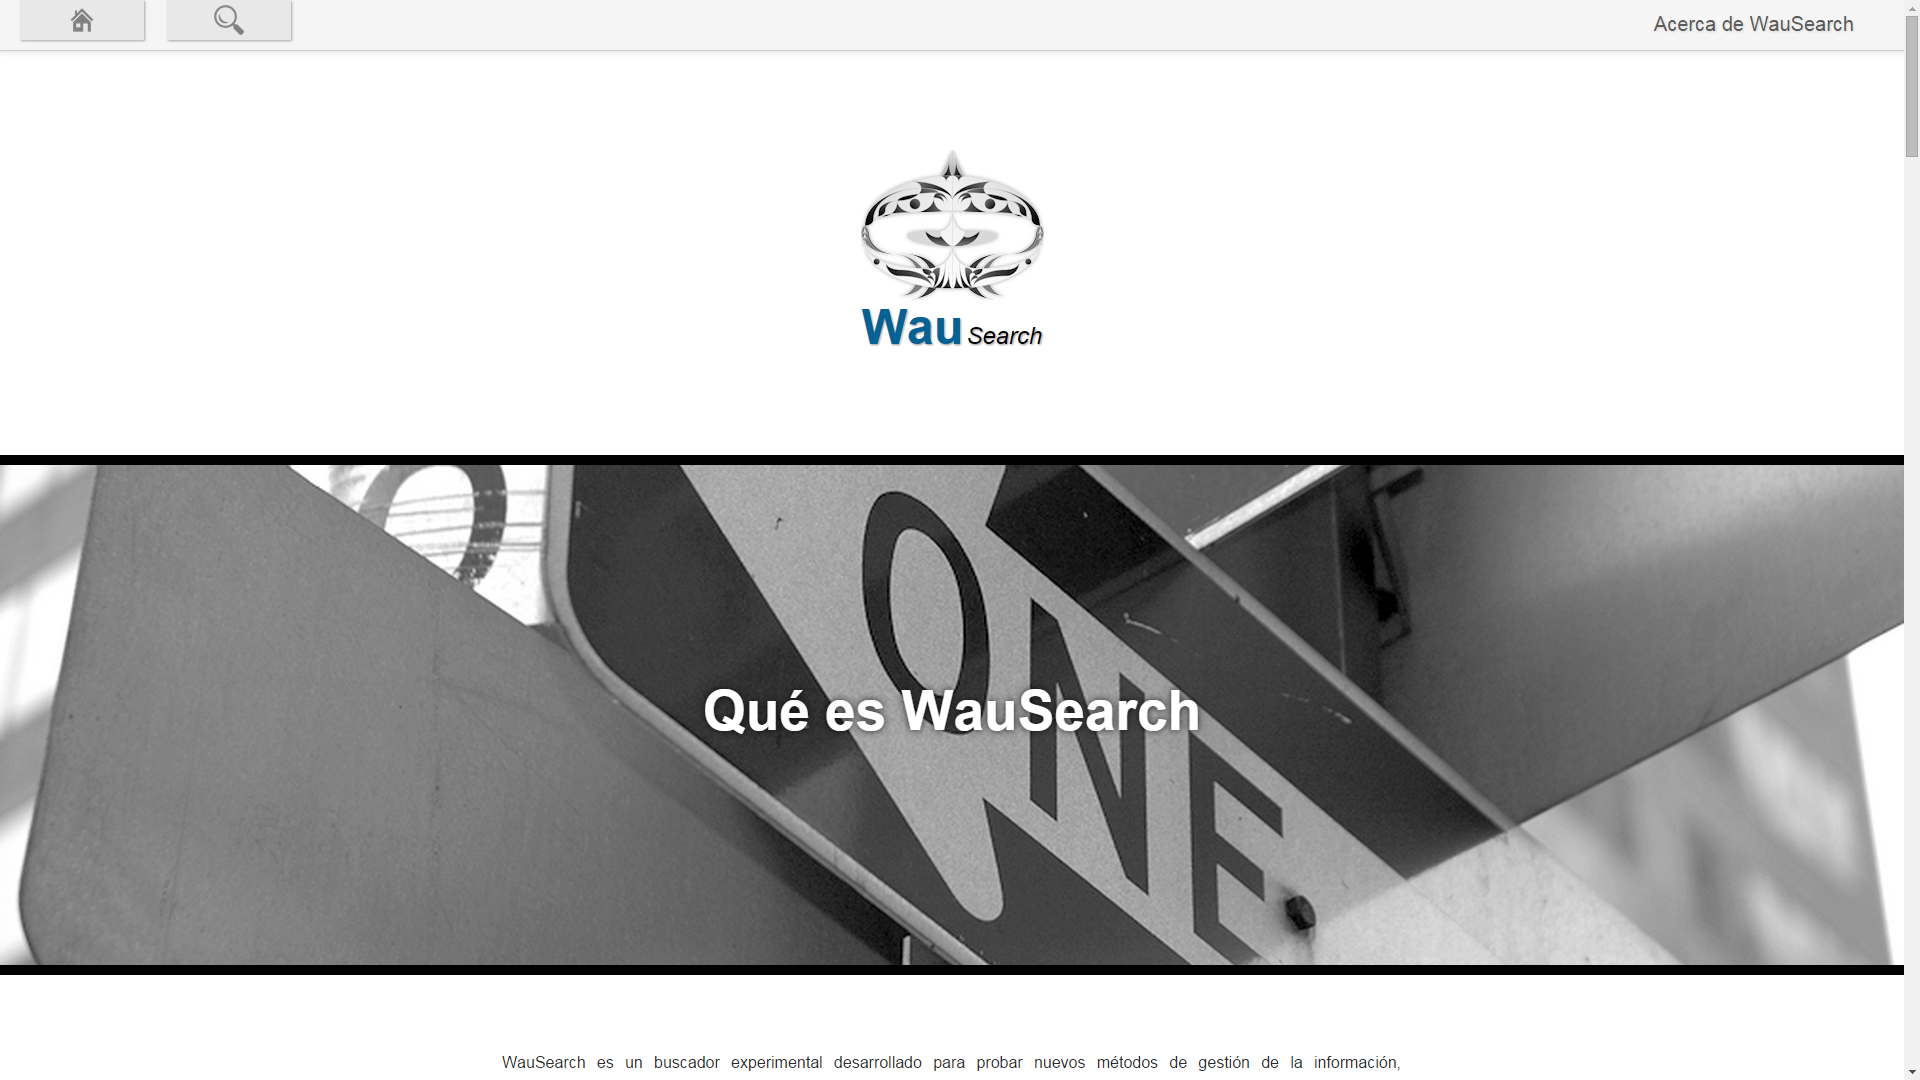 Información relativa al proyecto WauSearch